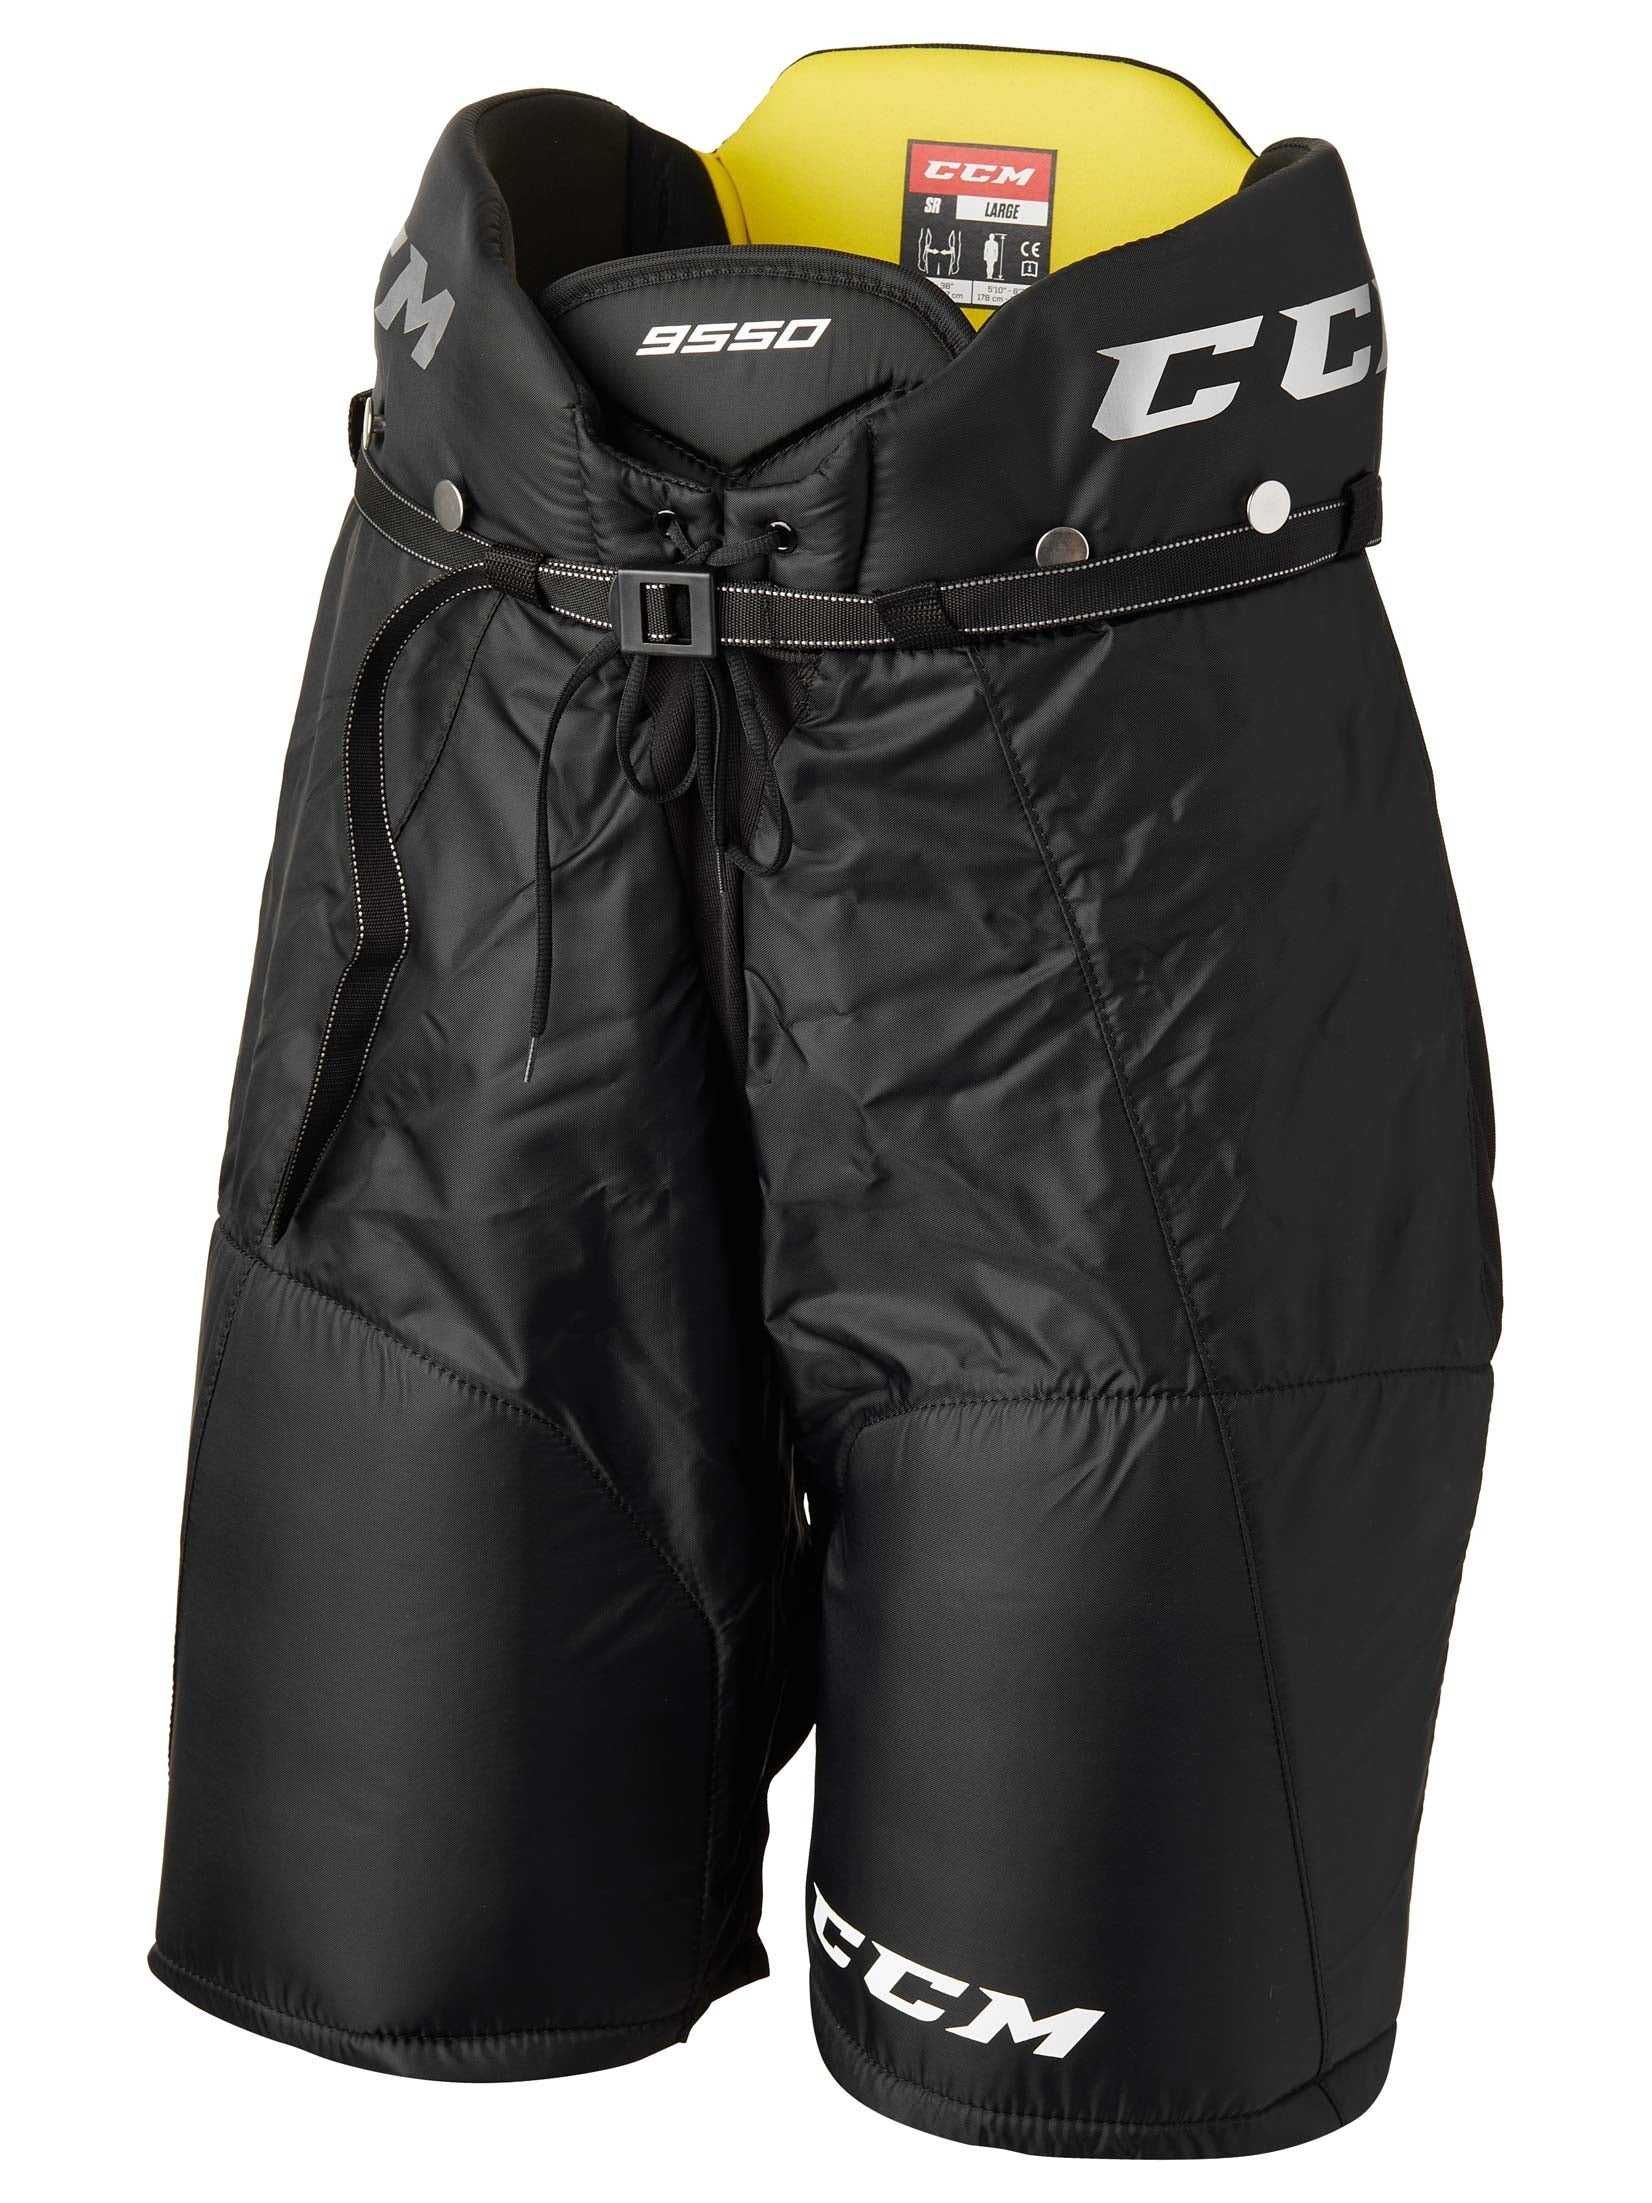 Новые хоккейные шорты Bauer, CCM, Warrior,  размеры Junior   M, L, XL